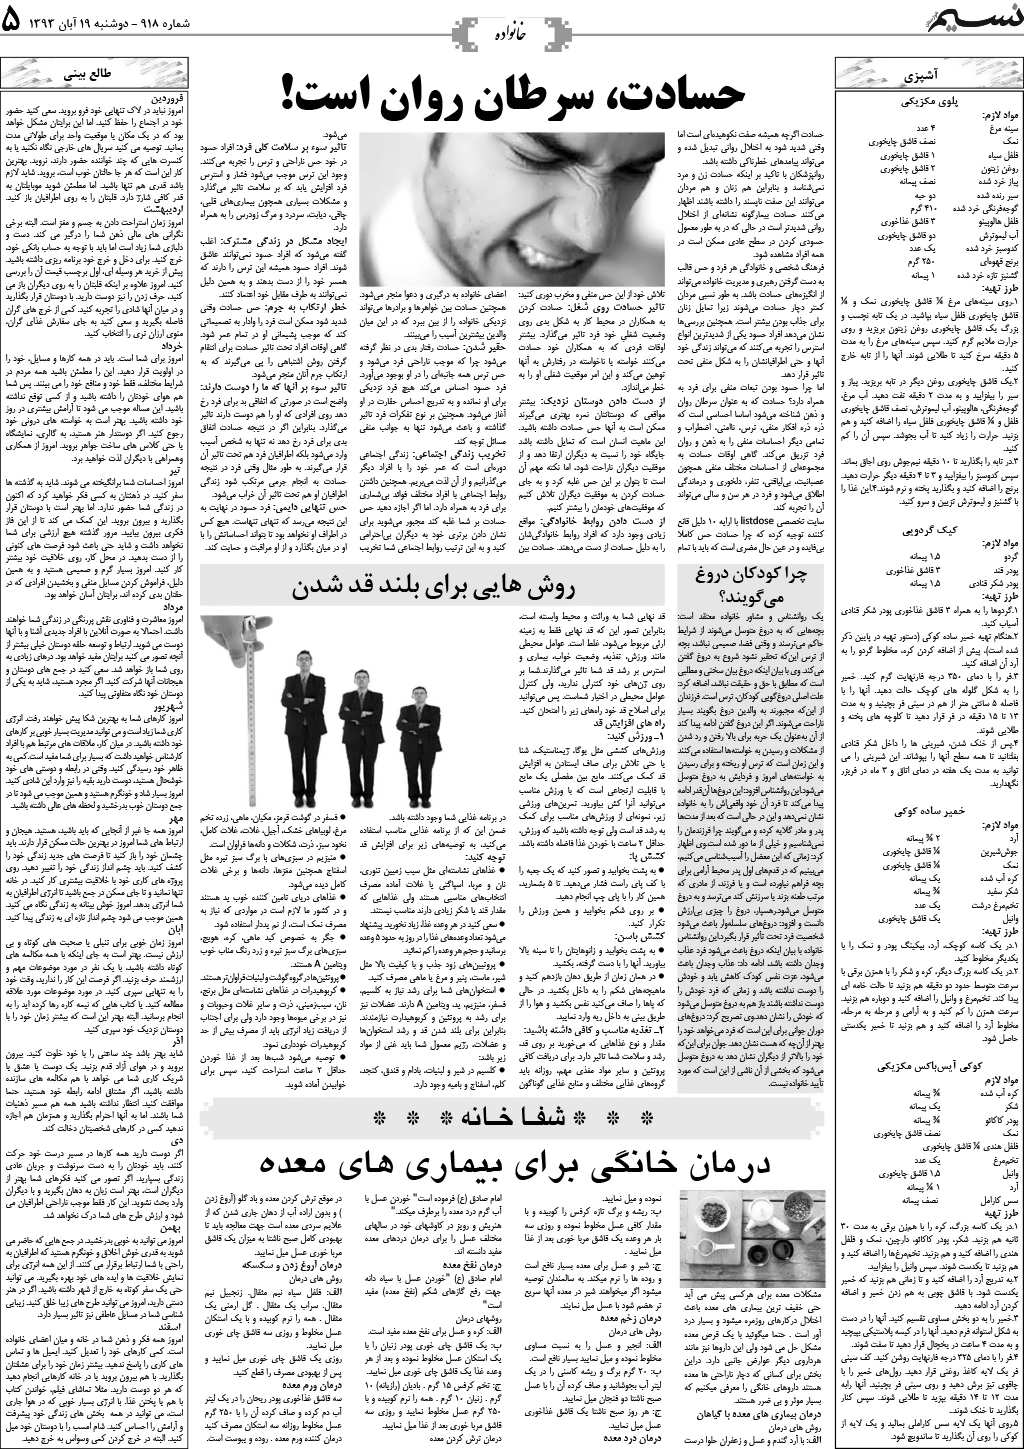 صفحه خانواده روزنامه نسیم شماره 918